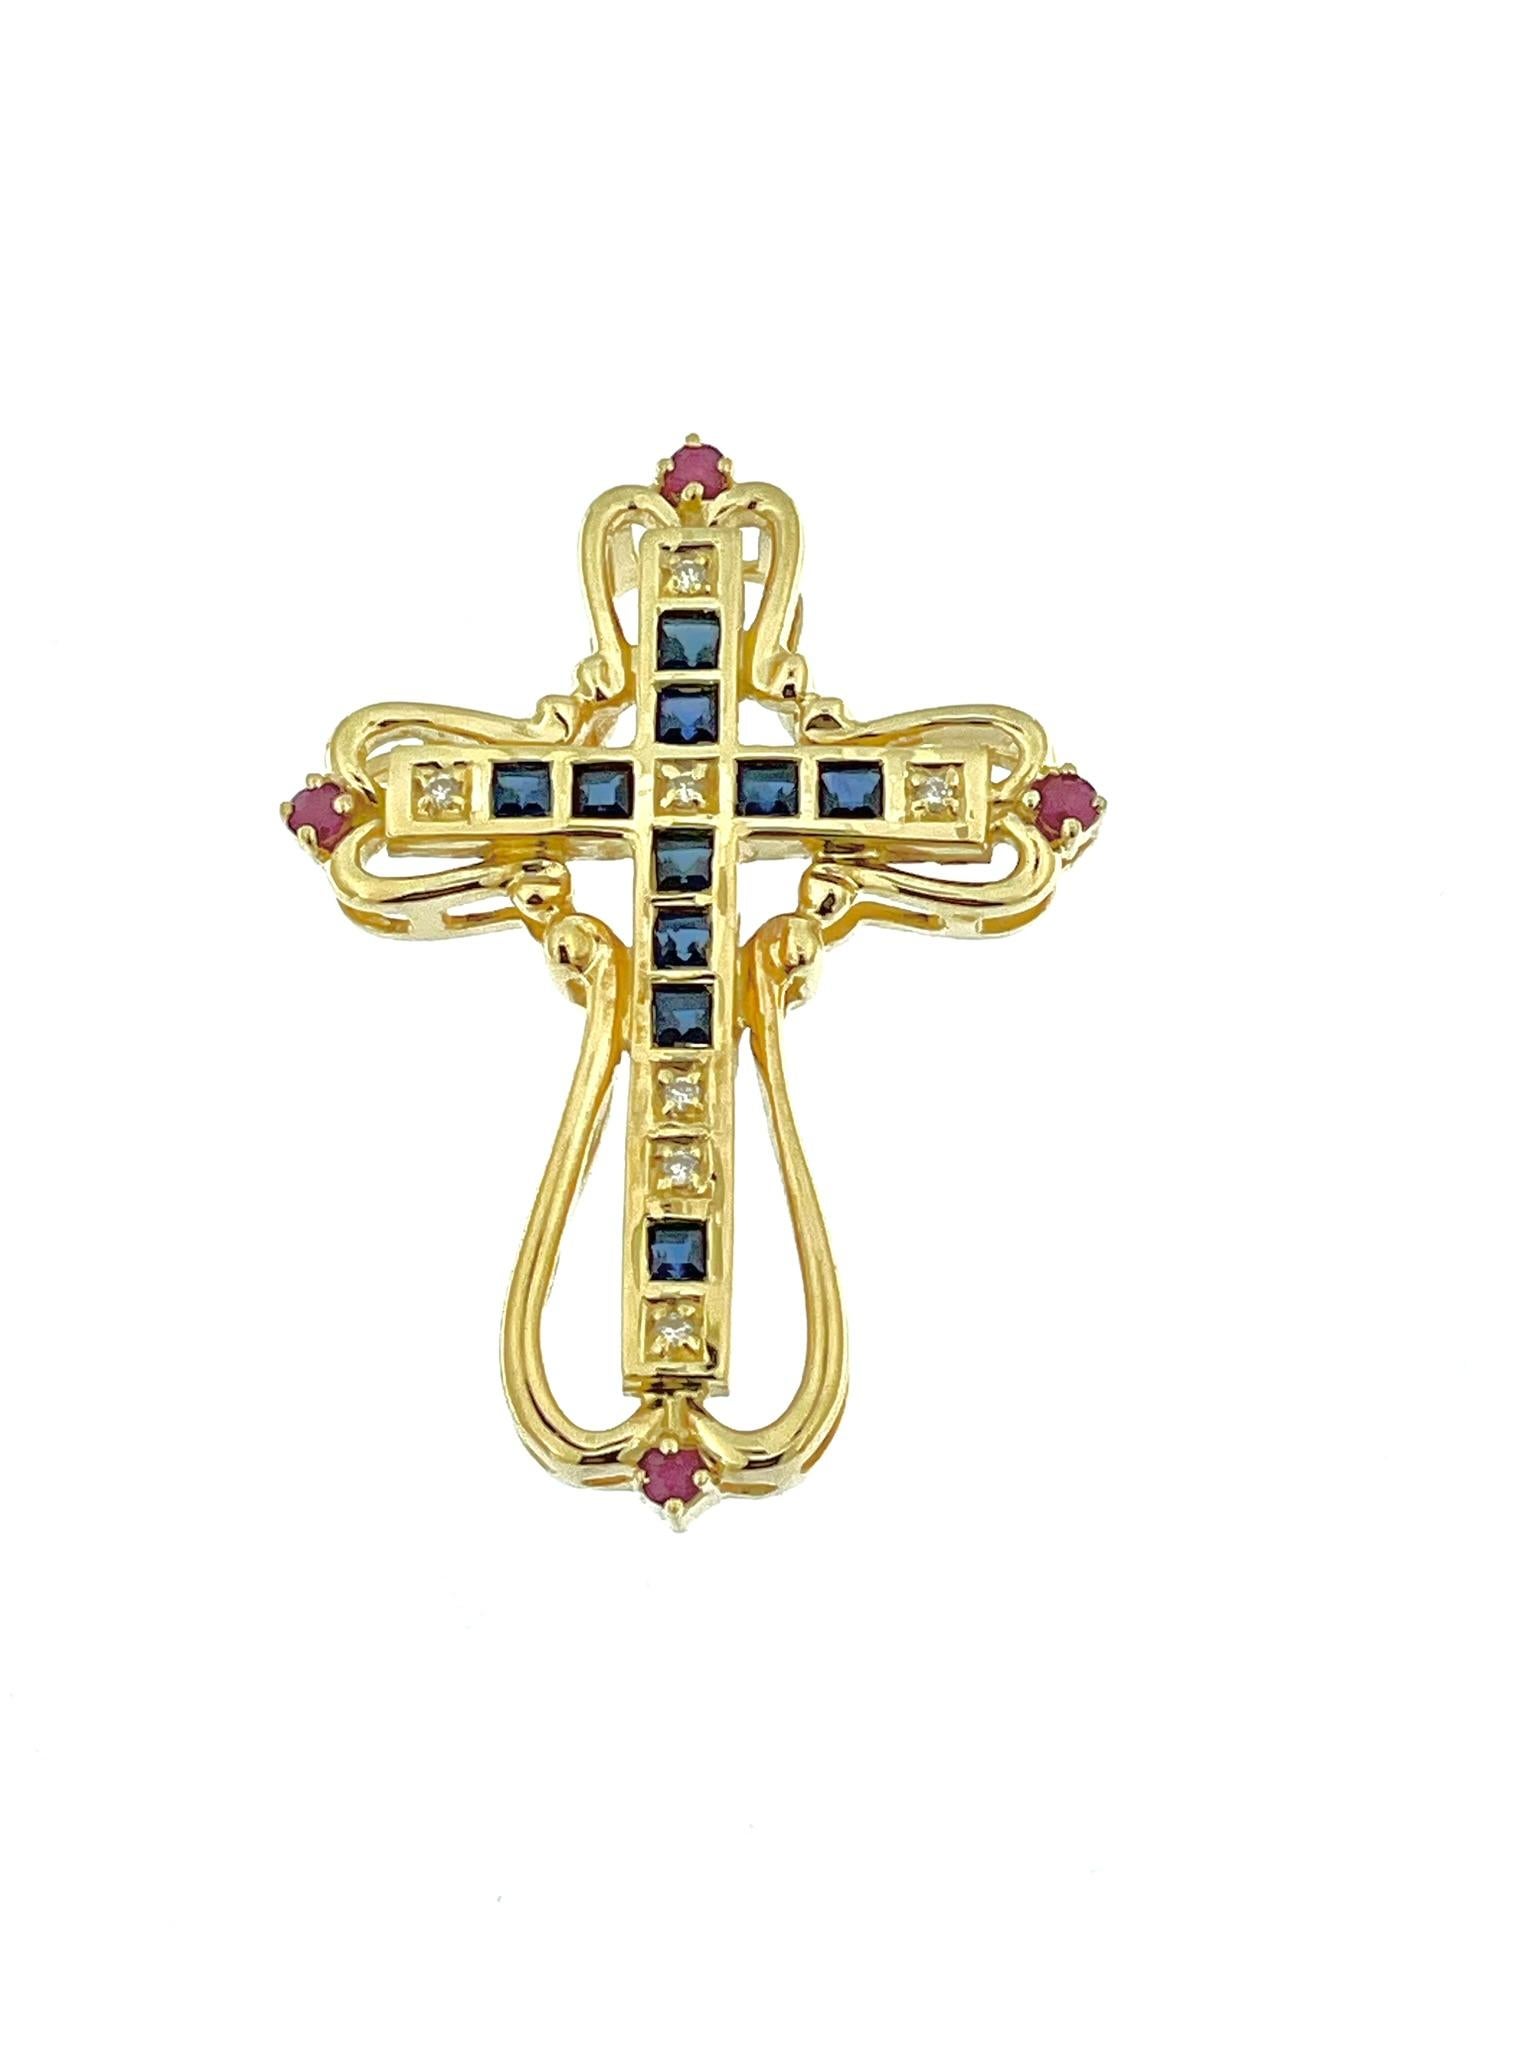 La croix italienne en or jaune avec diamants, saphirs et rubis est un bijou époustouflant qui respire le luxe et la sophistication. Fabriquée en or 18kt, cette croix témoigne de l'art inégalé et du souci du détail qui font la renommée de la